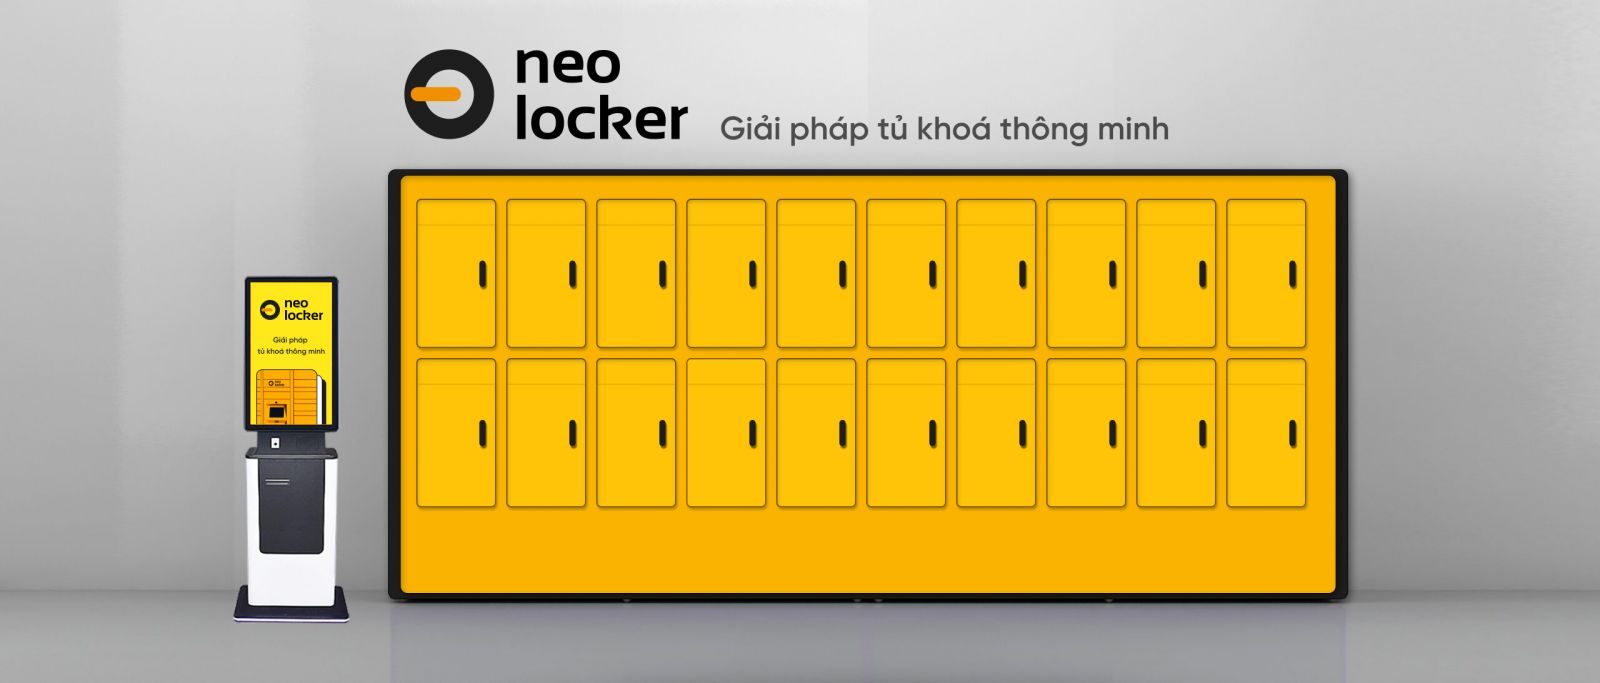 Smart locker rental solutions neolocker